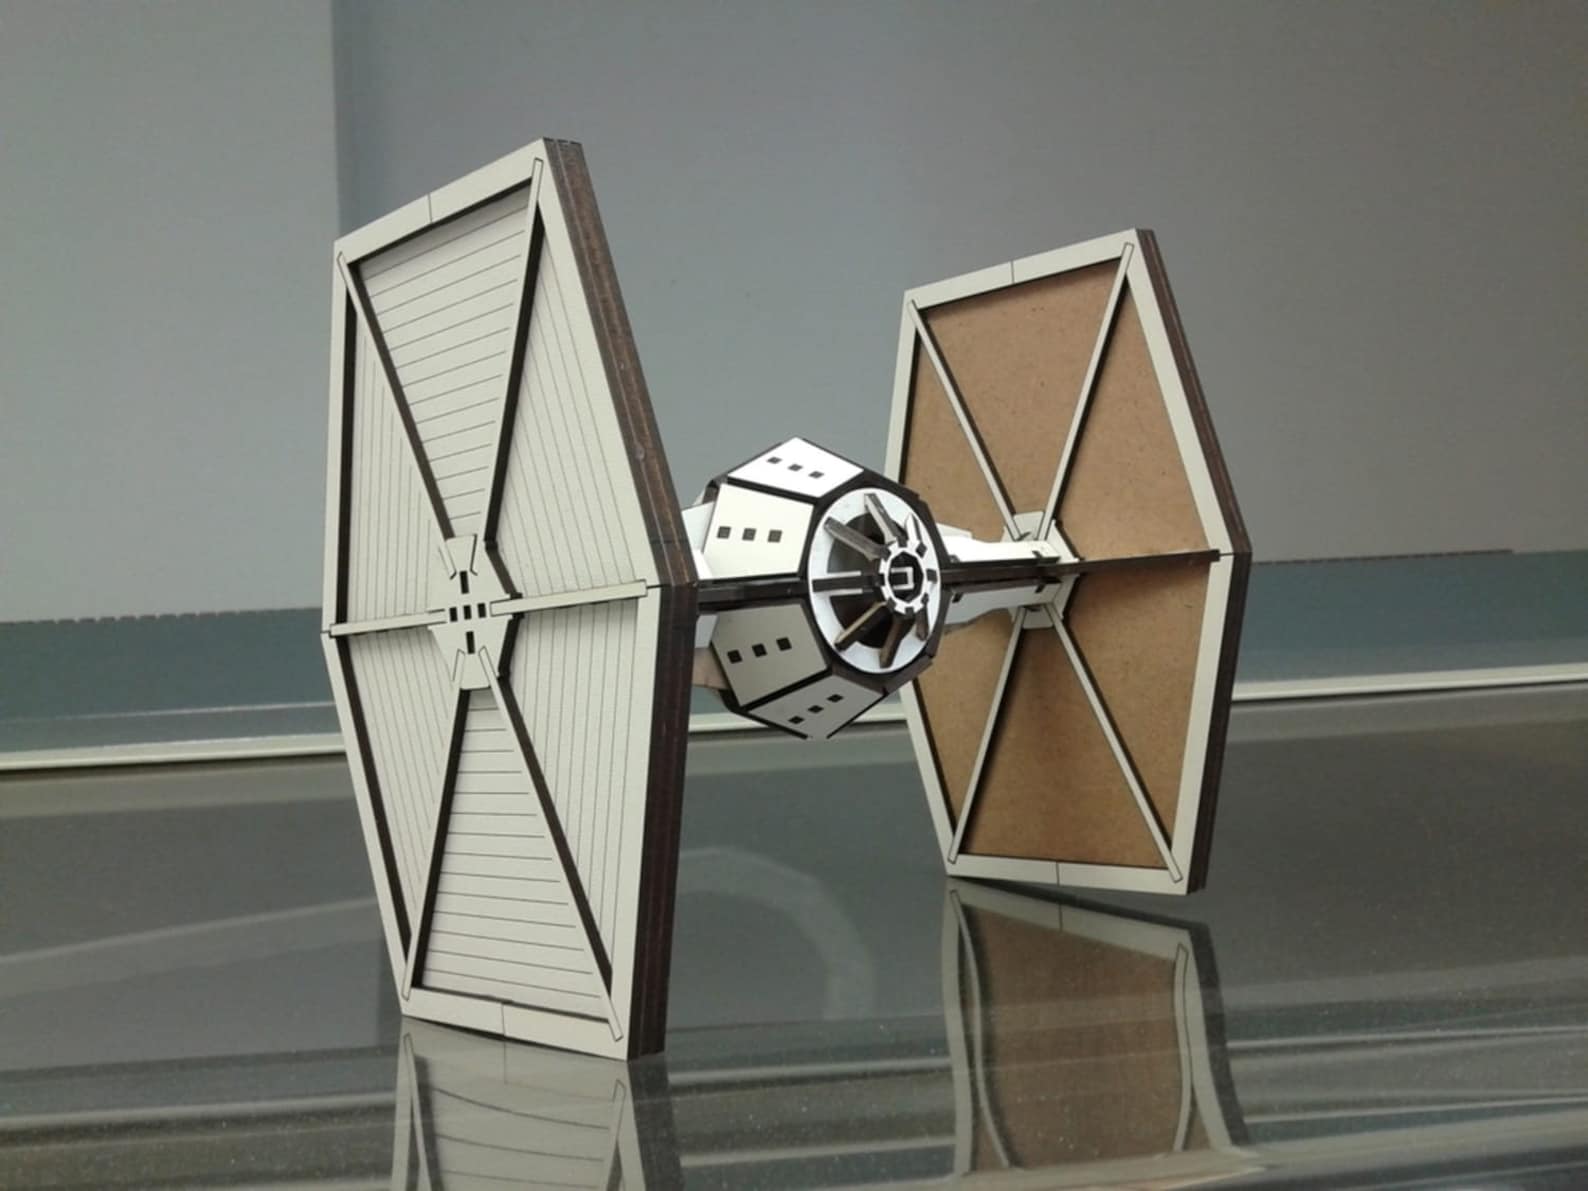 SW Laser Cut Starship Wooden Model 3D Kit 6-Pack Set 7